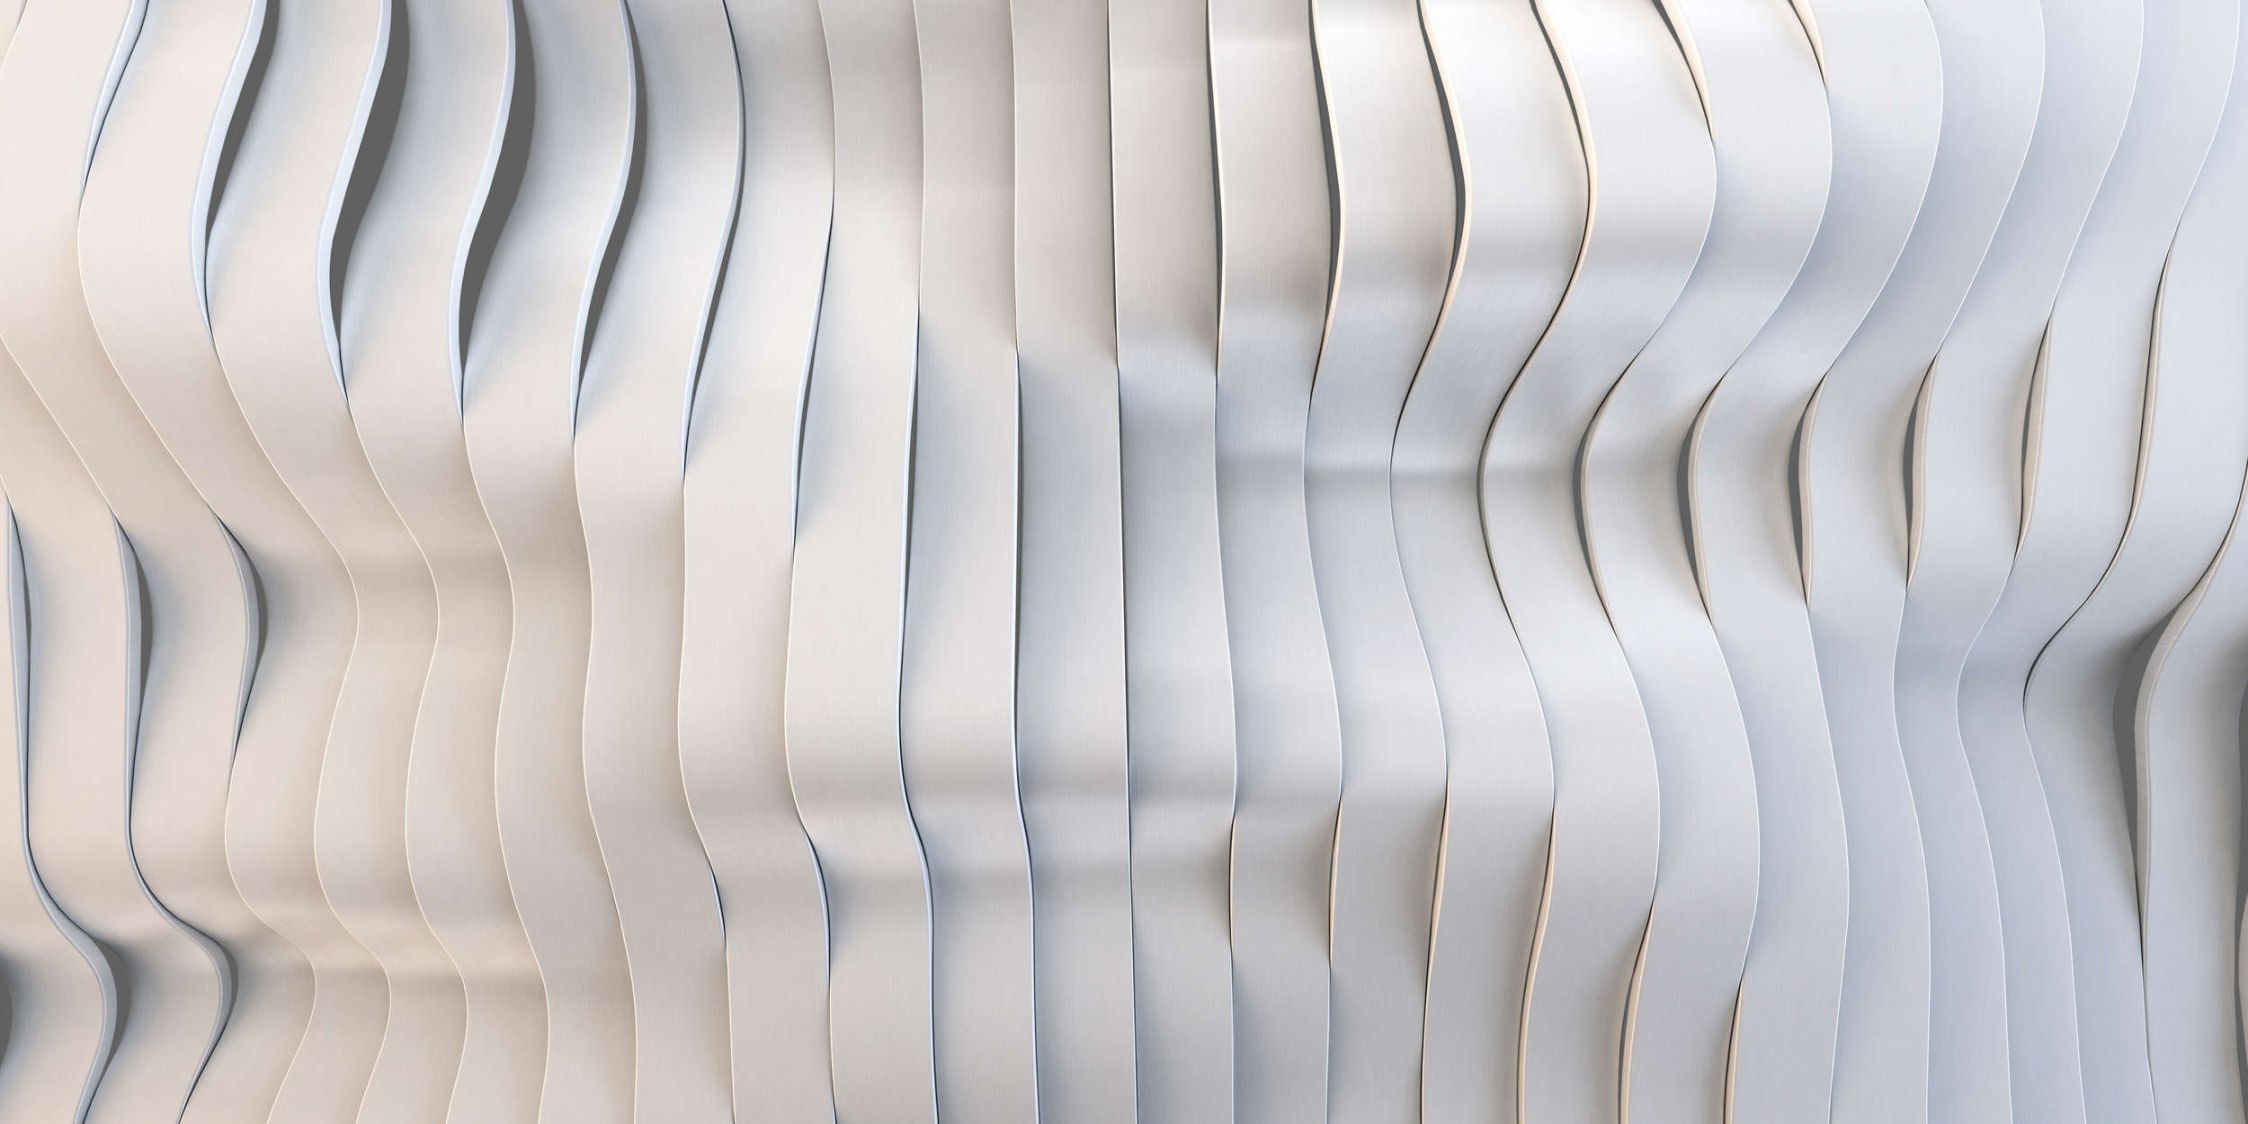             solaris 1 - papier peint en papier au design futuriste de lignes électriques - intissé premium lisse et légèrement brillant
        